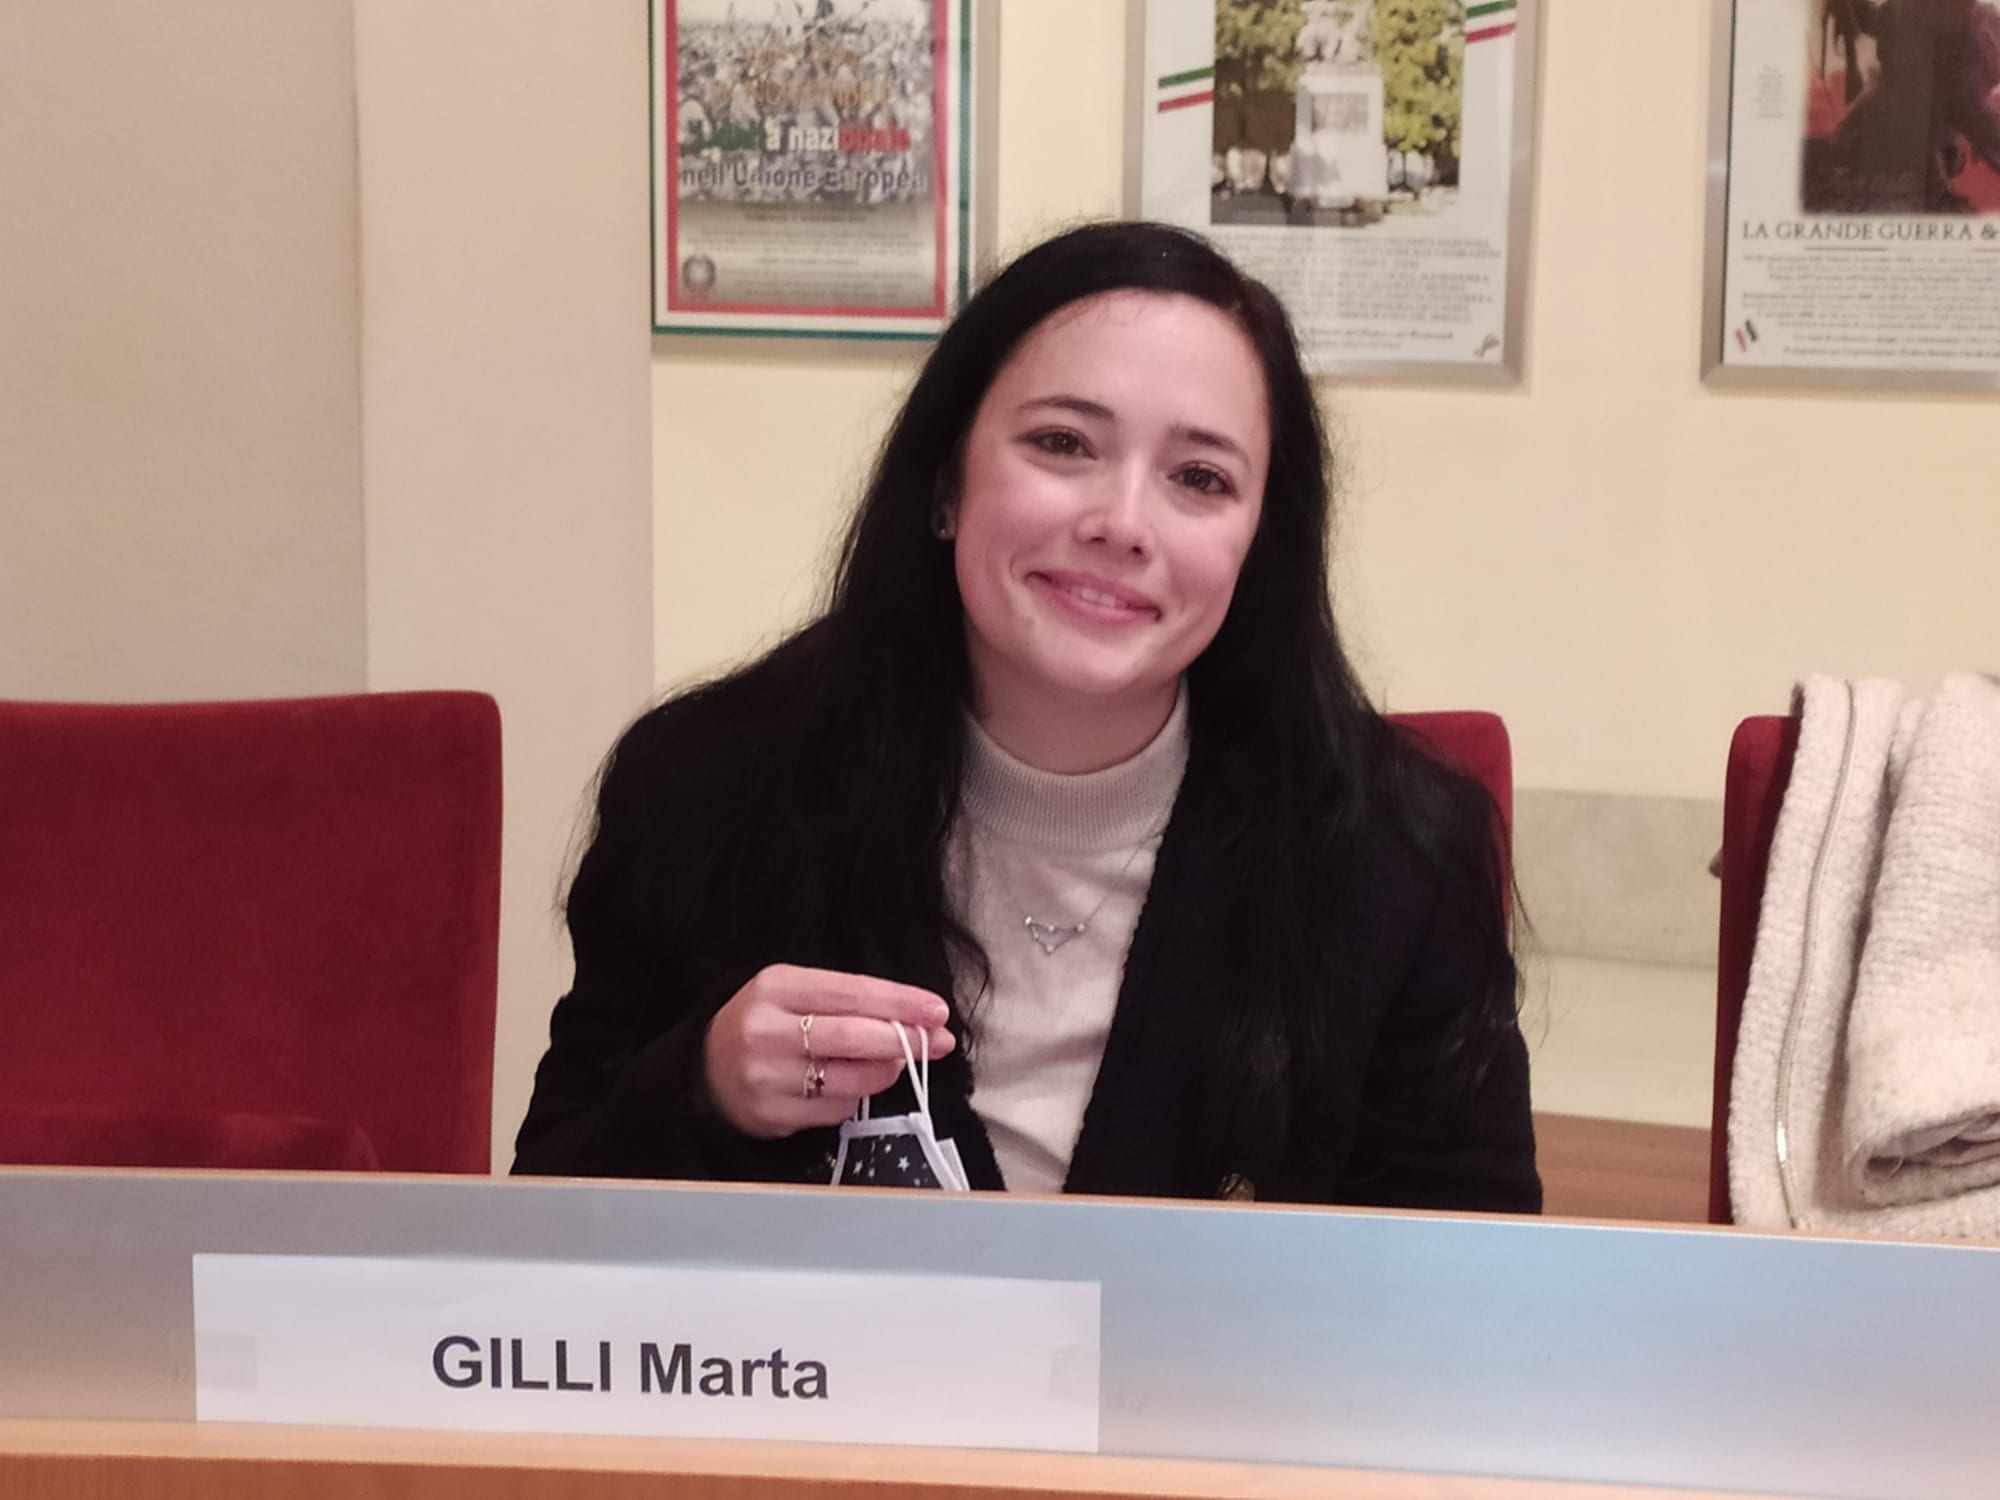 Commissione Pgt, Marta Gilli eletta presidente con il voto di Fi. Prove di allargamento della coalizione?